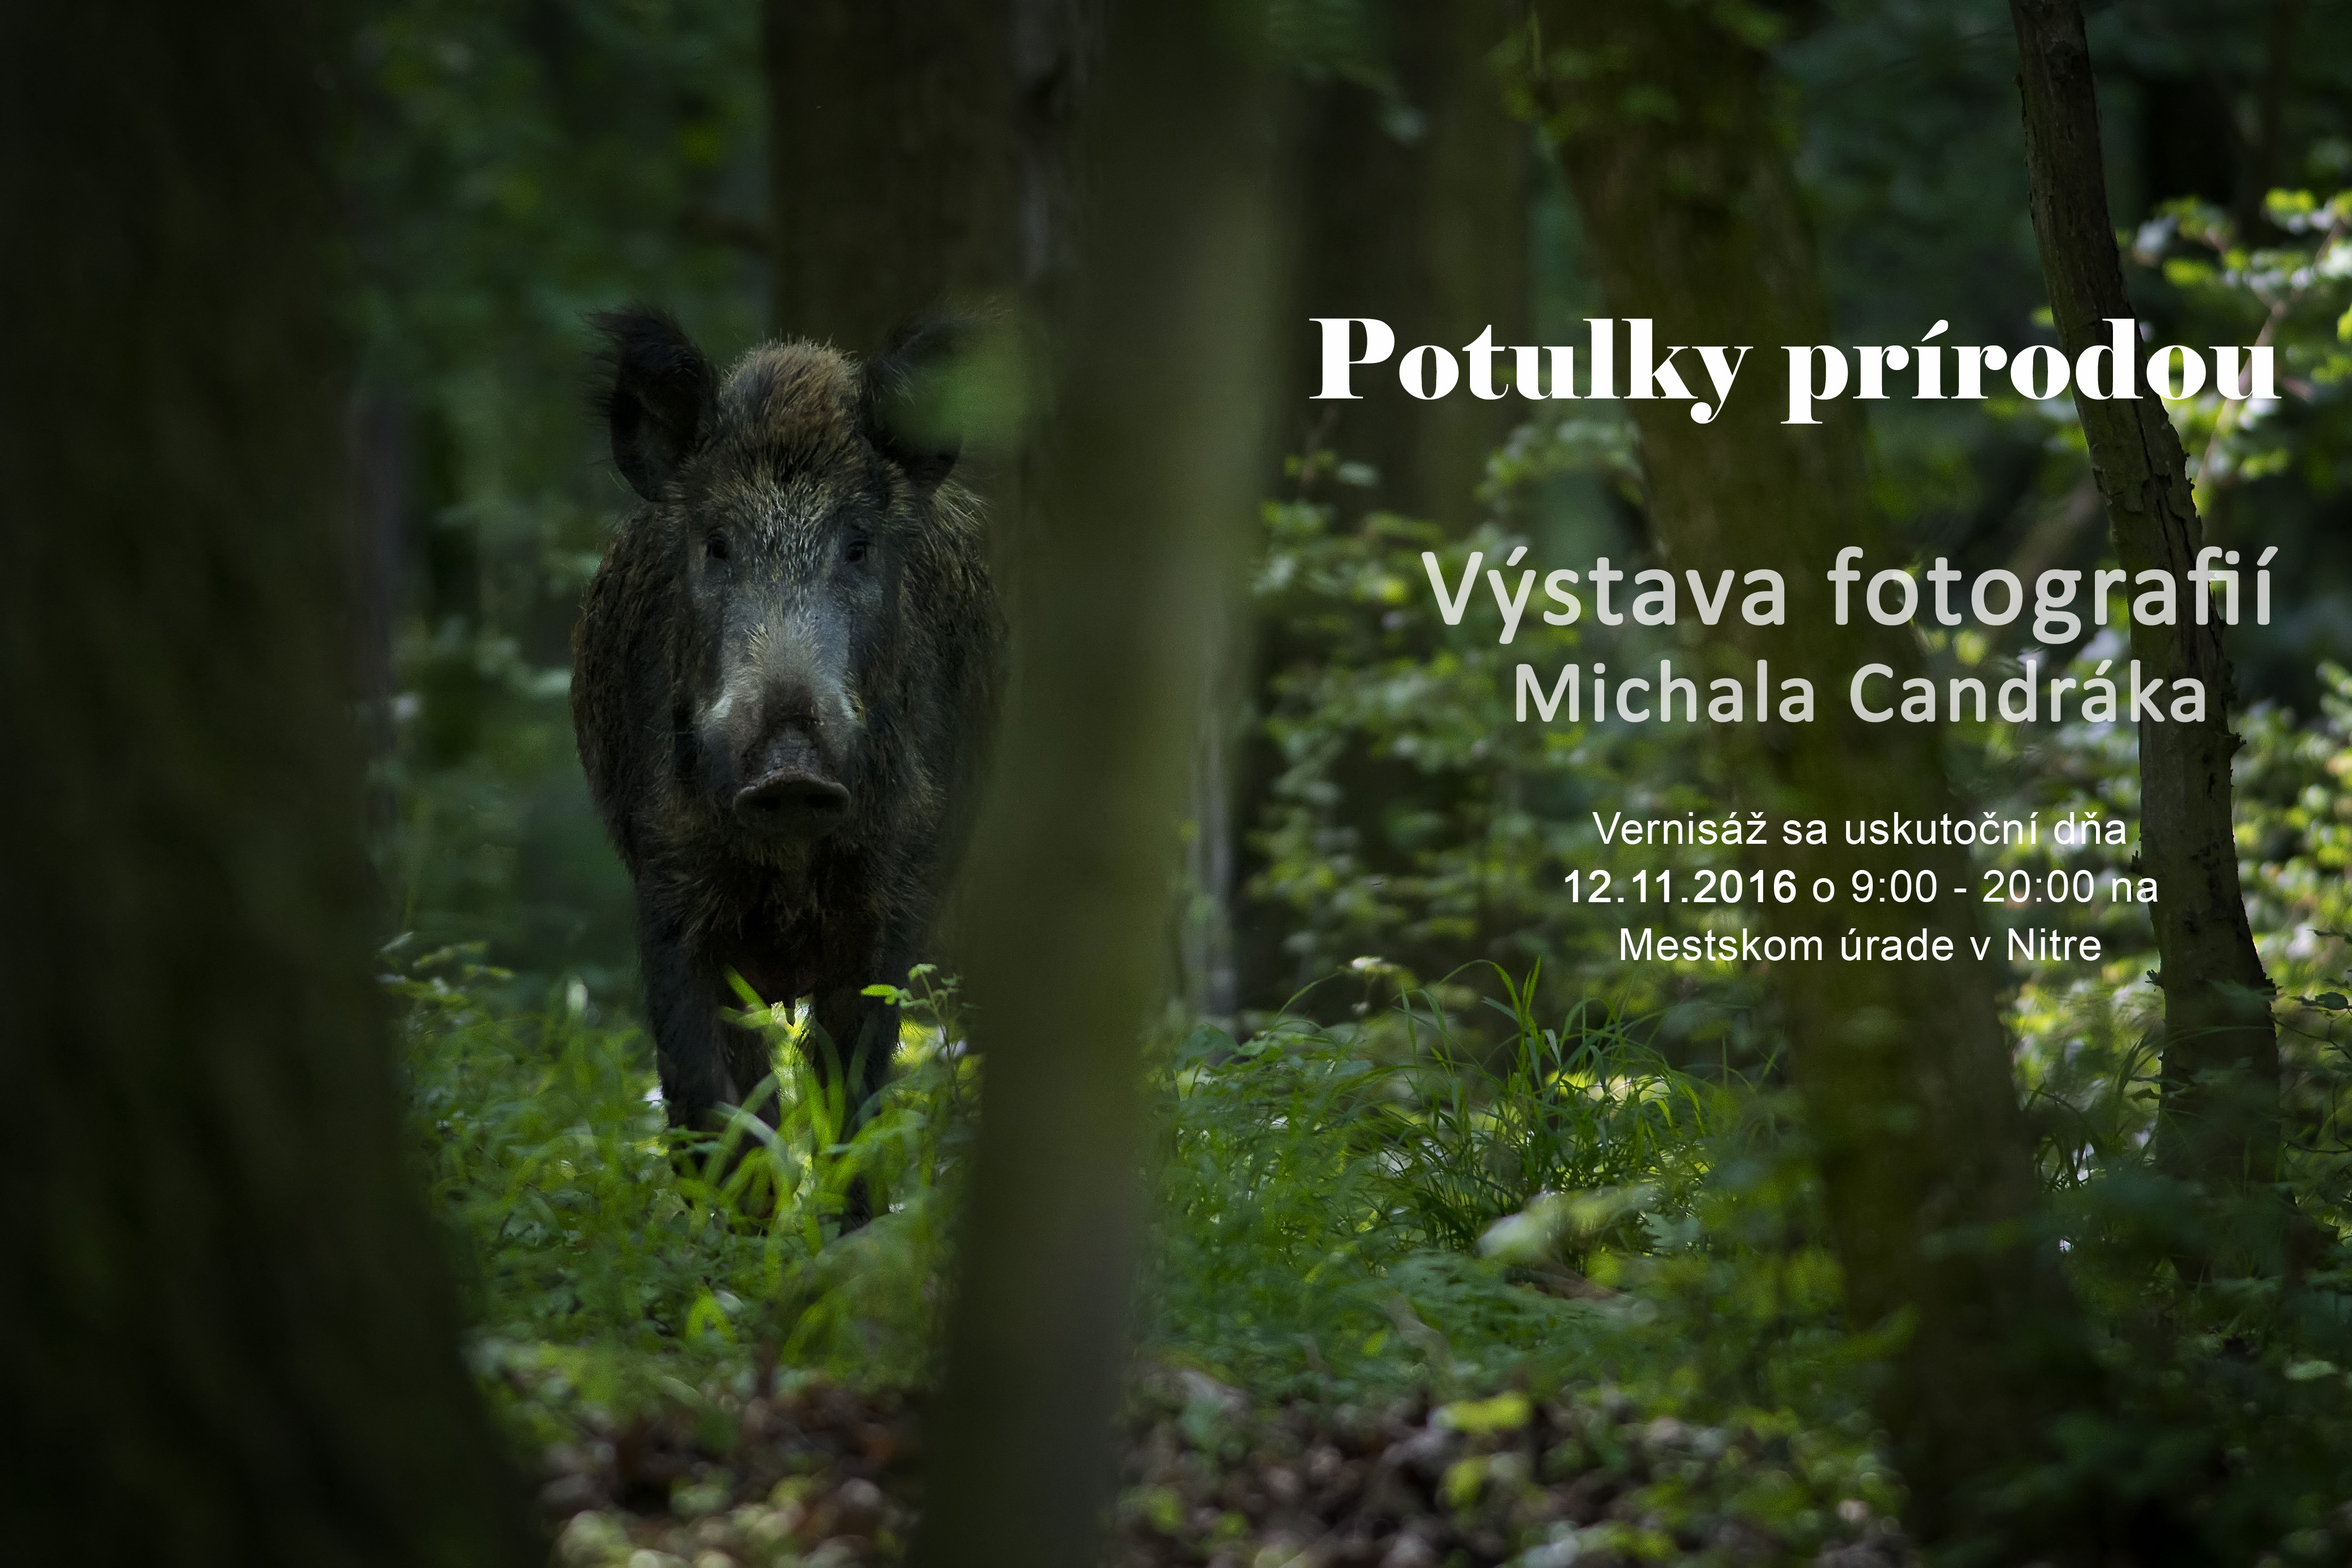 Výstava fotografií Potulky prírodou Michala Candráka v ramci festivalu vysoké hory Nitra. 